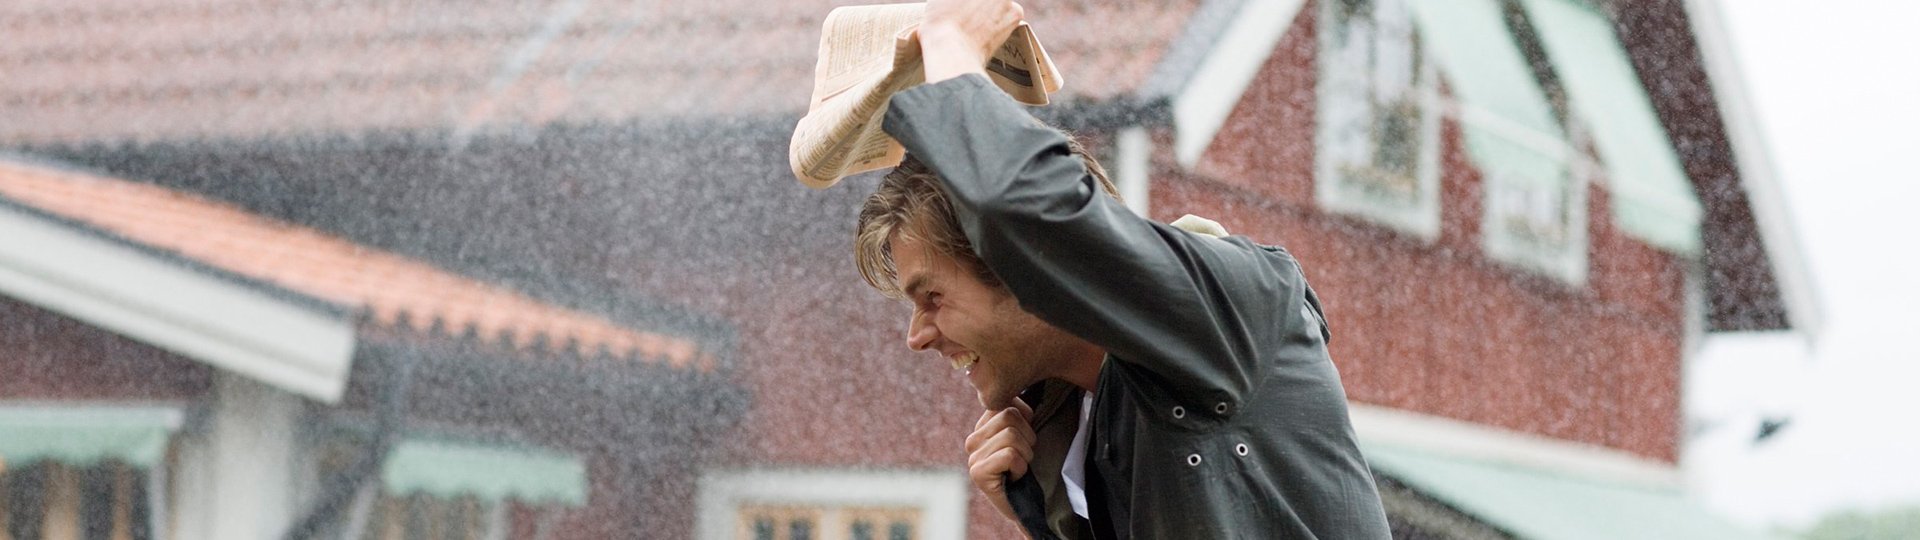 Mann läuft durch den Regen und hält sich eine Zeitung über den Kopf